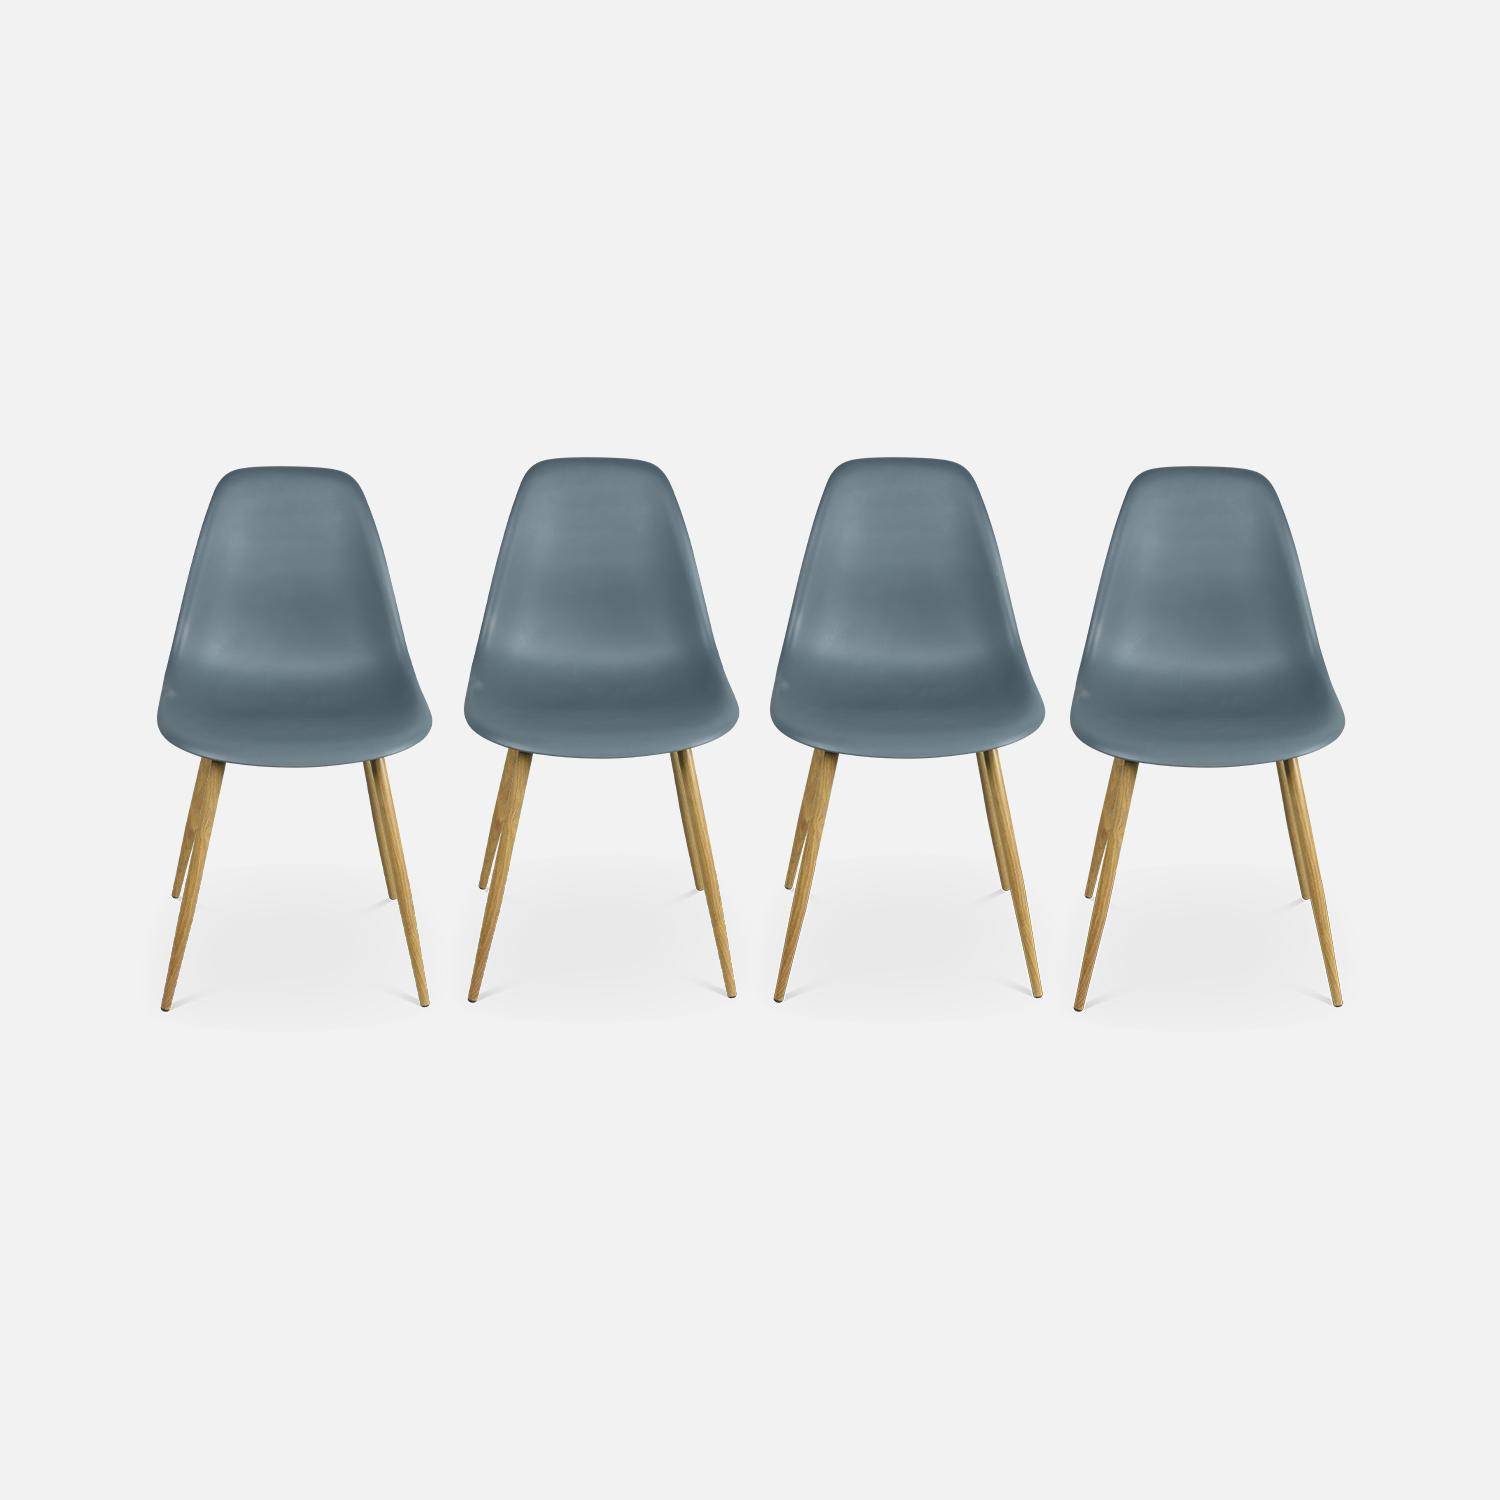 Juego de 4 sillas escandinavas - Lars - patas de metal color madera, sillas de una plaza, color gris,sweeek,Photo4